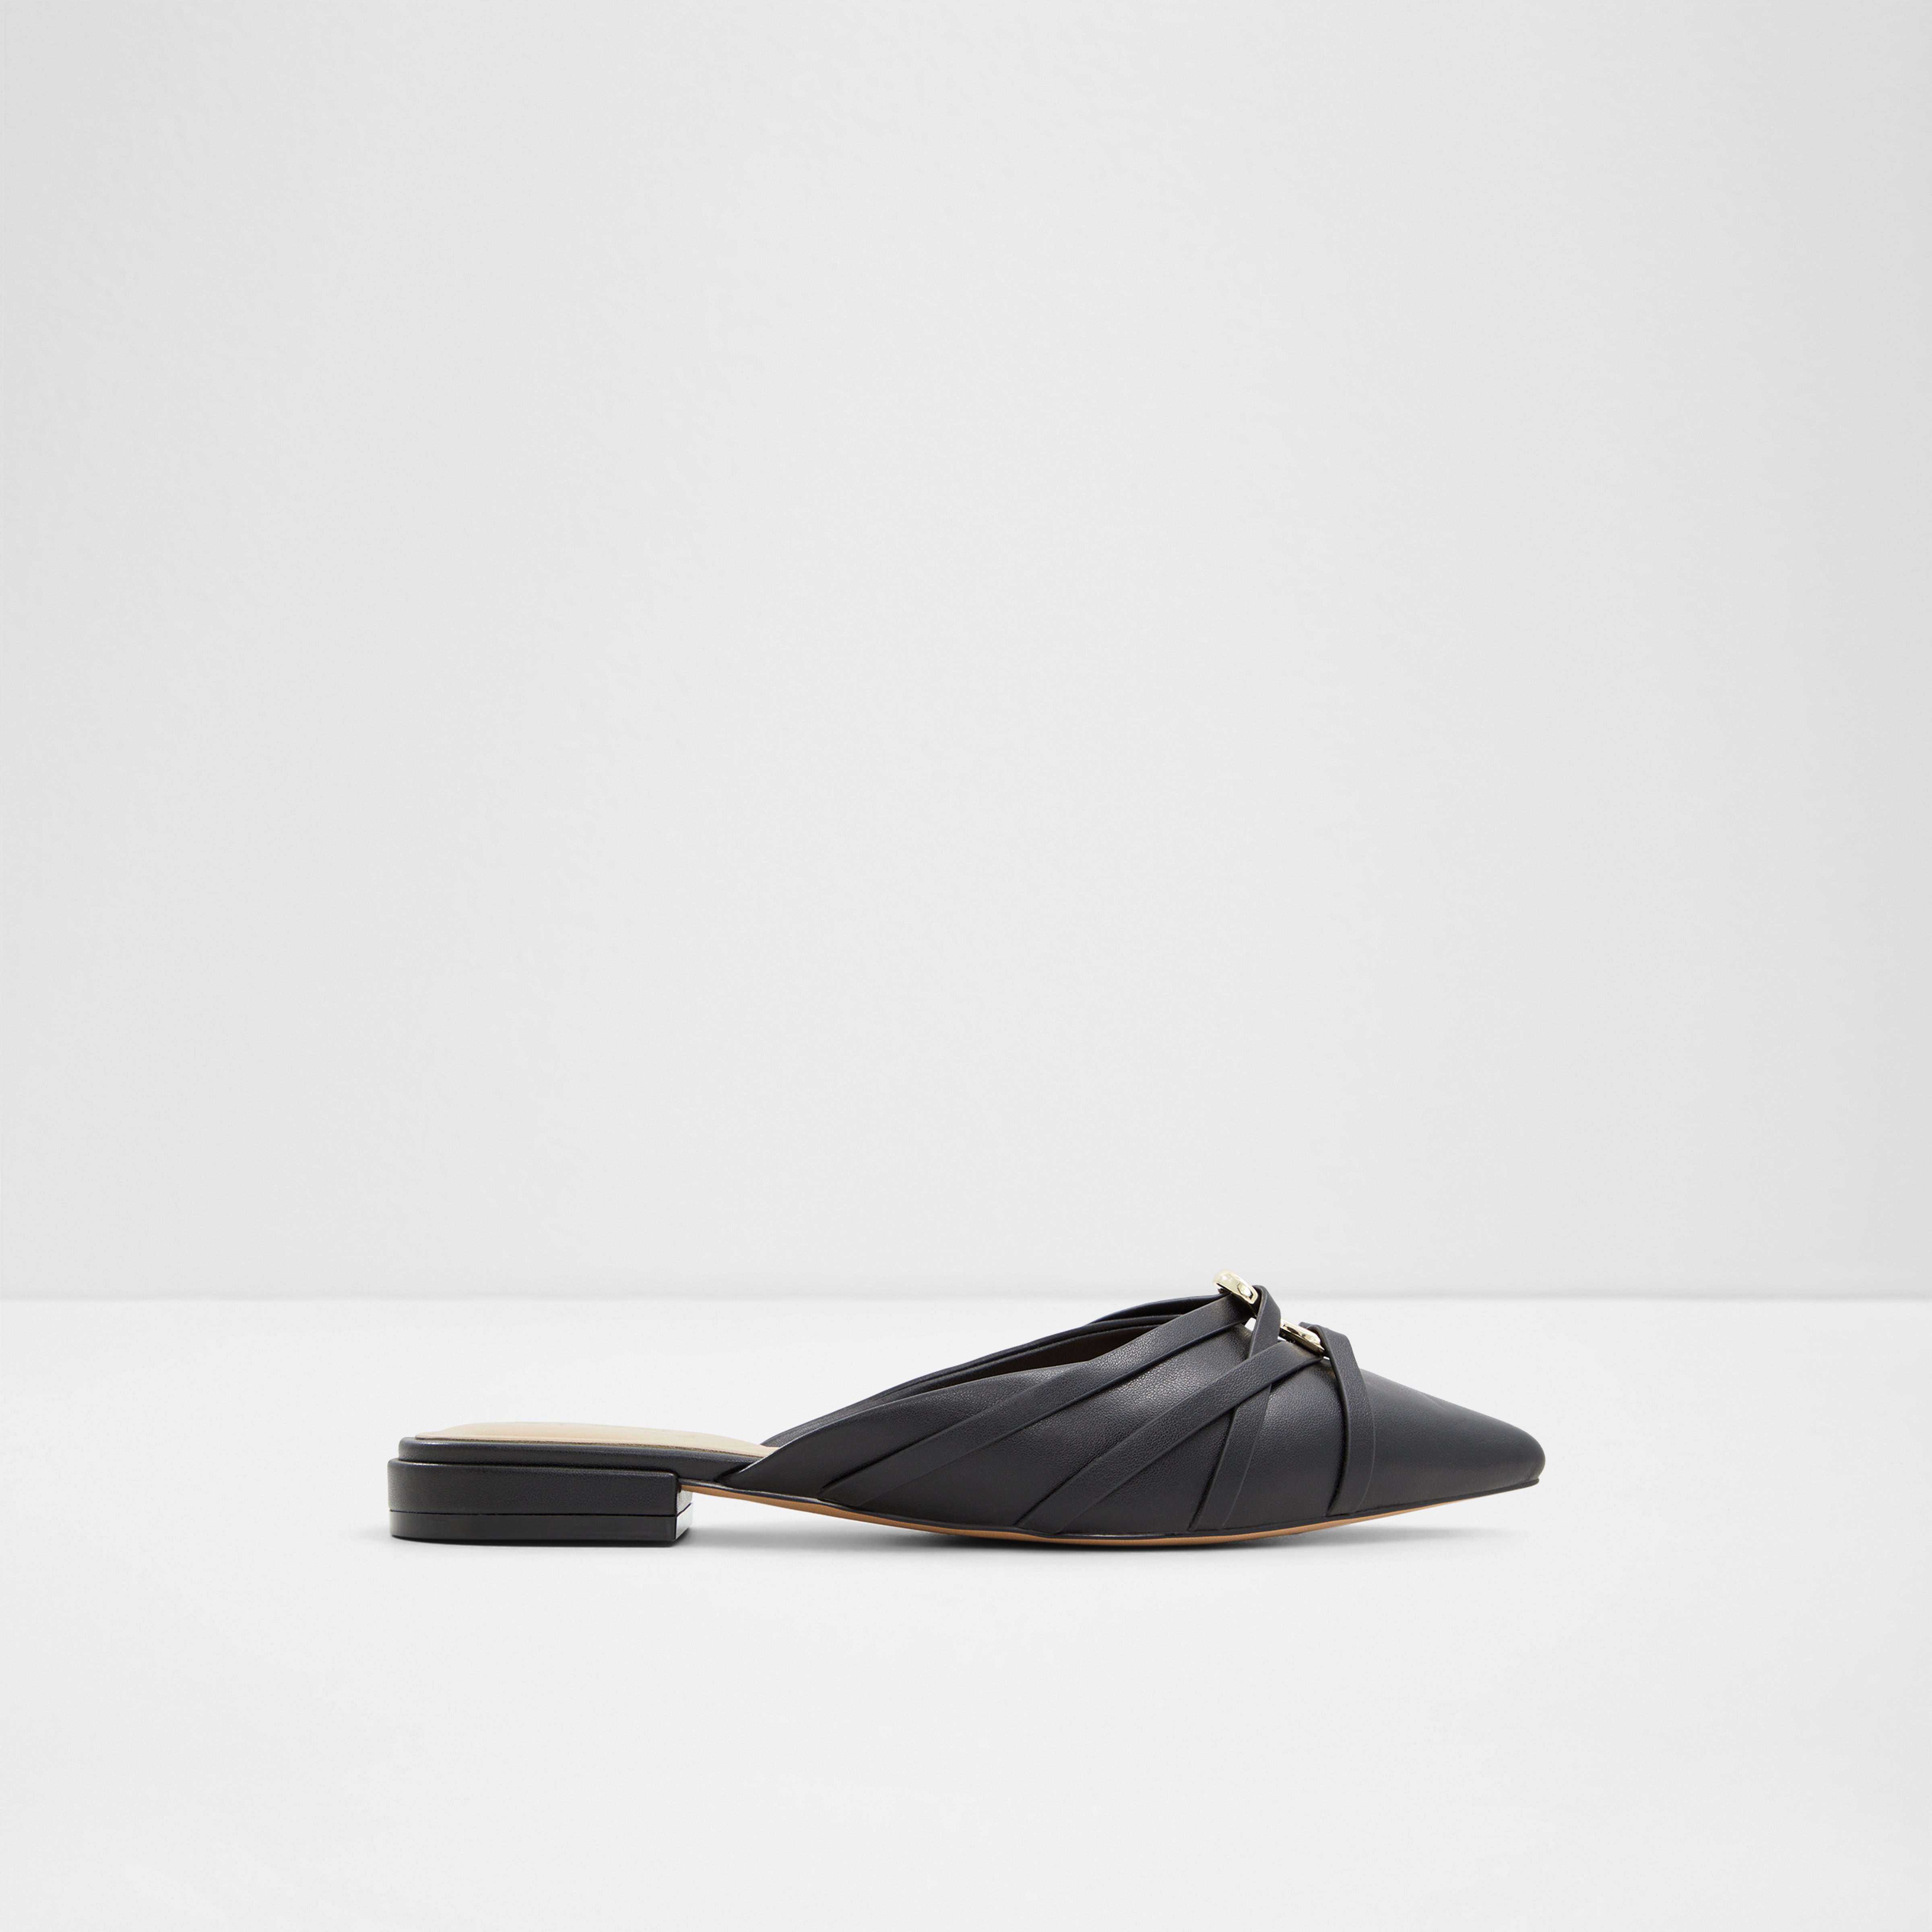 Aldo Ovendean Shoes - Ladies